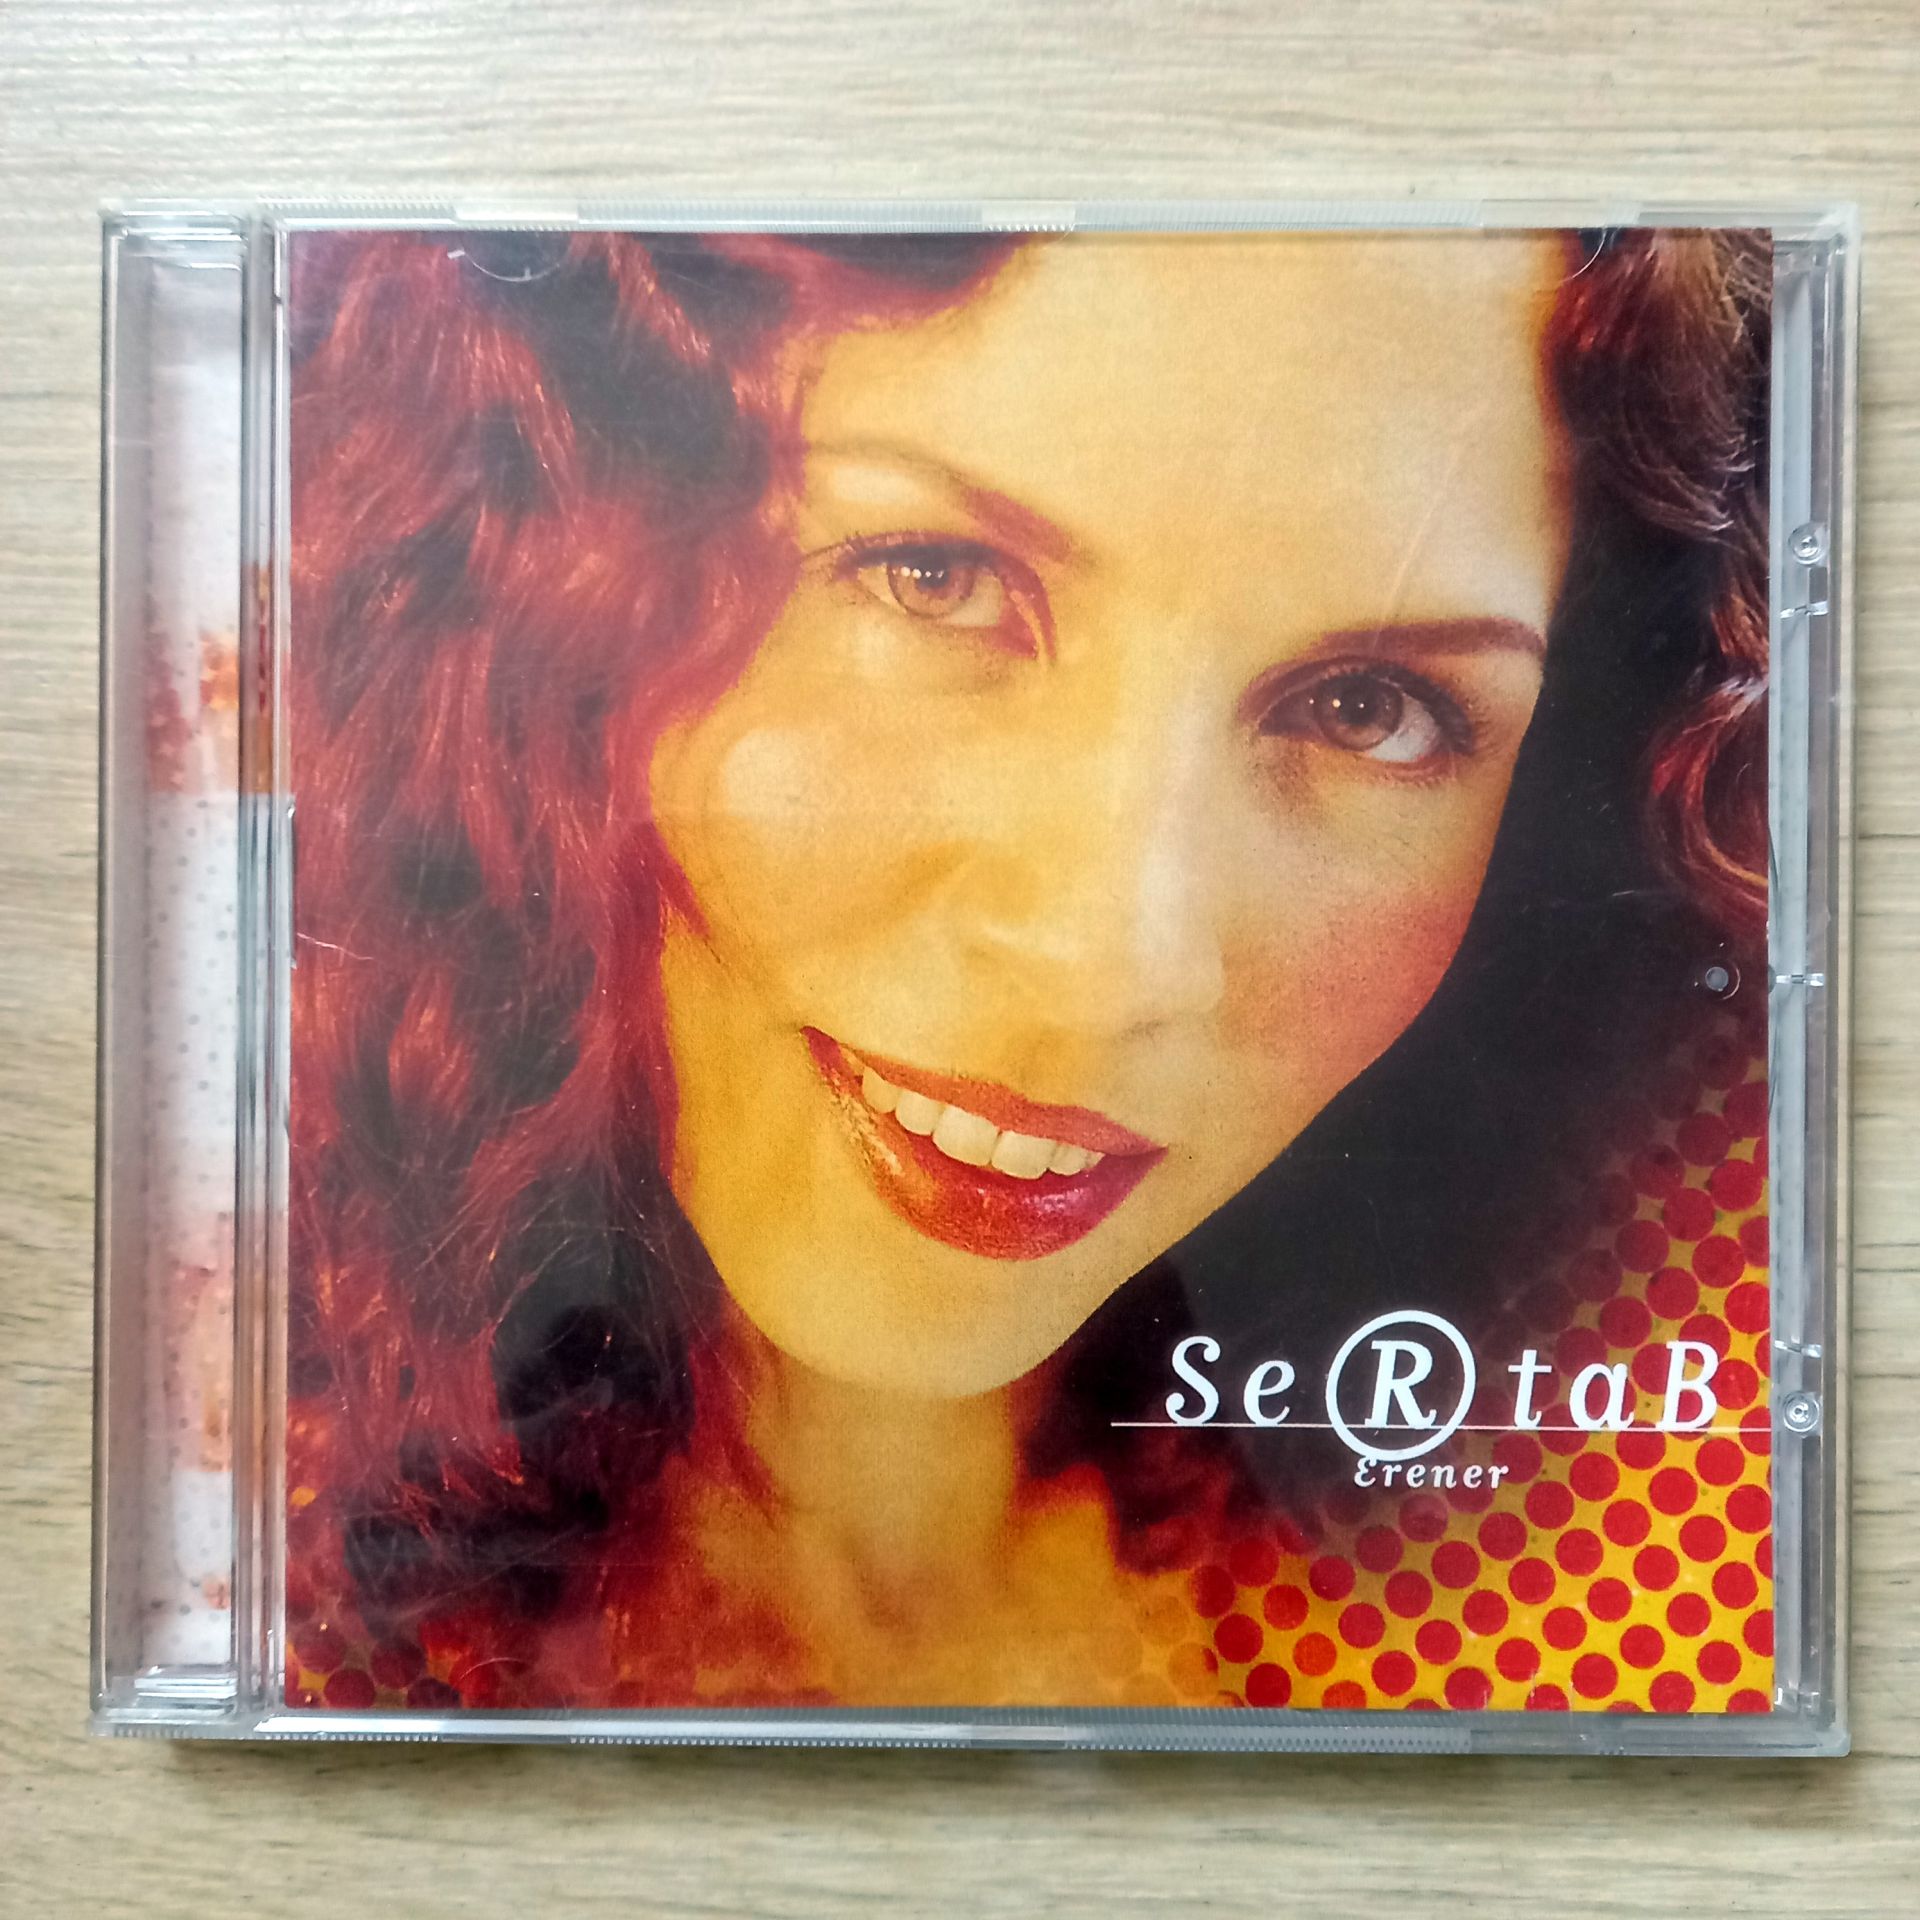 SERTAB ERENER – SERTAB ERENER (1999) - CD 2.EL